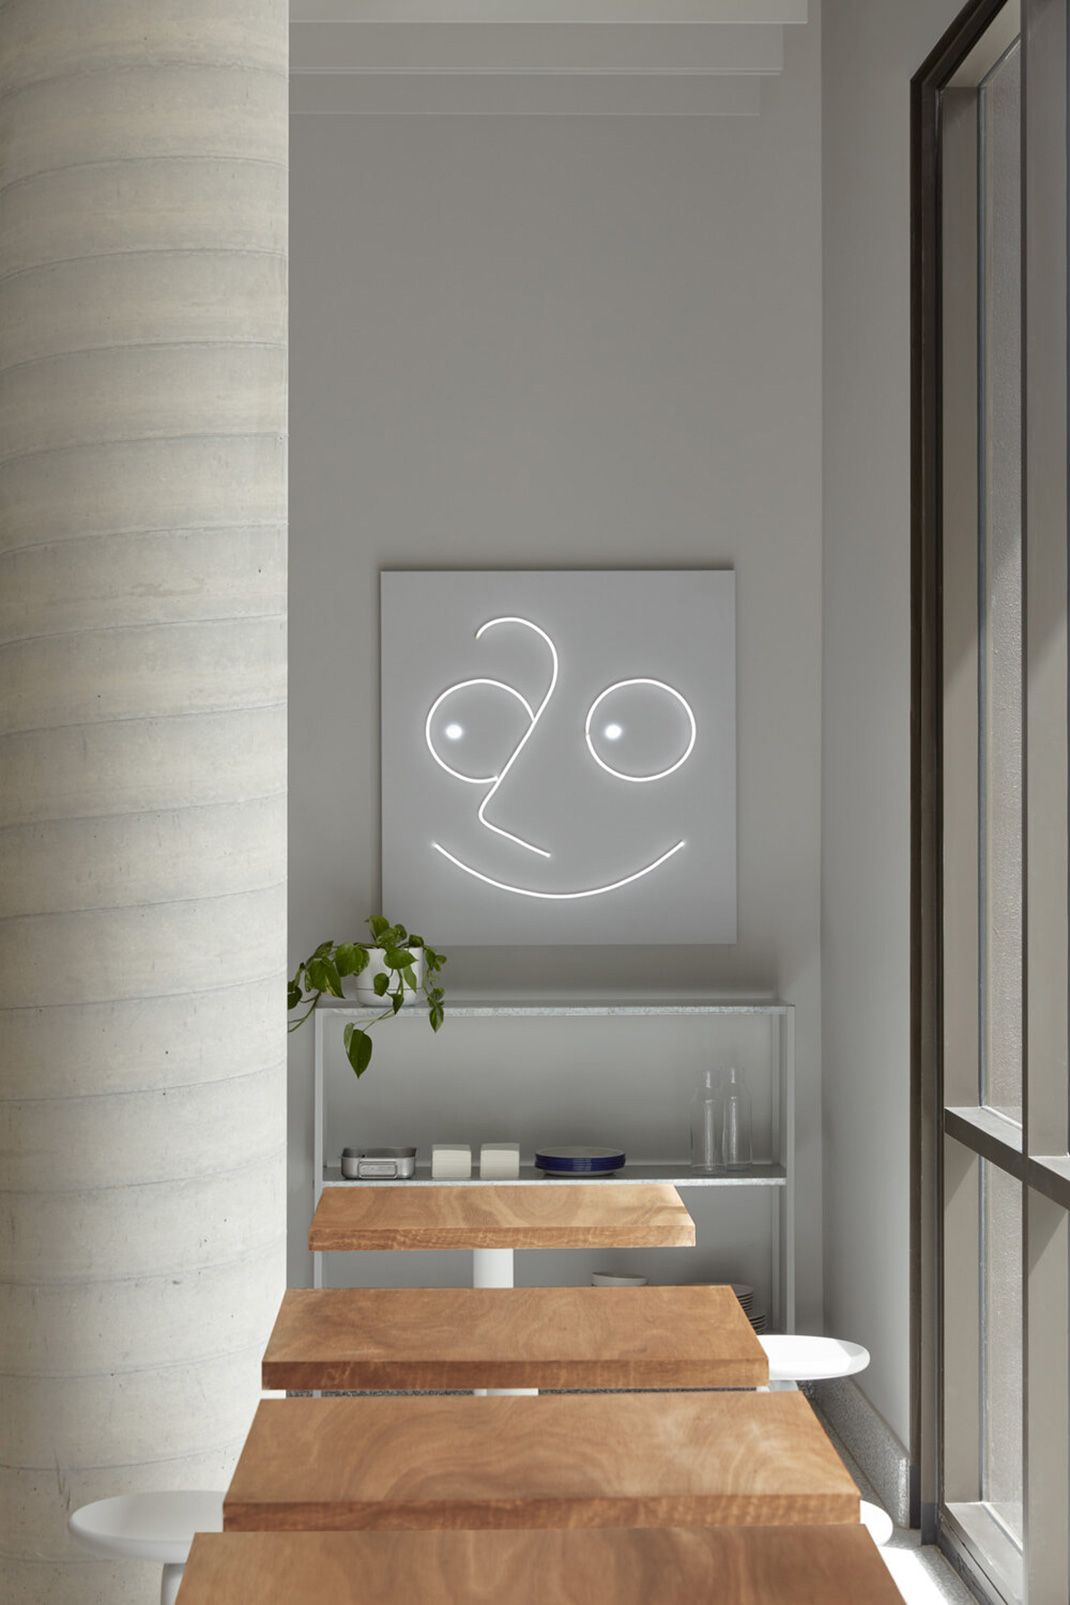 人物插画风格咖啡馆  咖啡馆 头像 插图 logo设计 logo设计 vi设计 空间设计 视觉餐饮